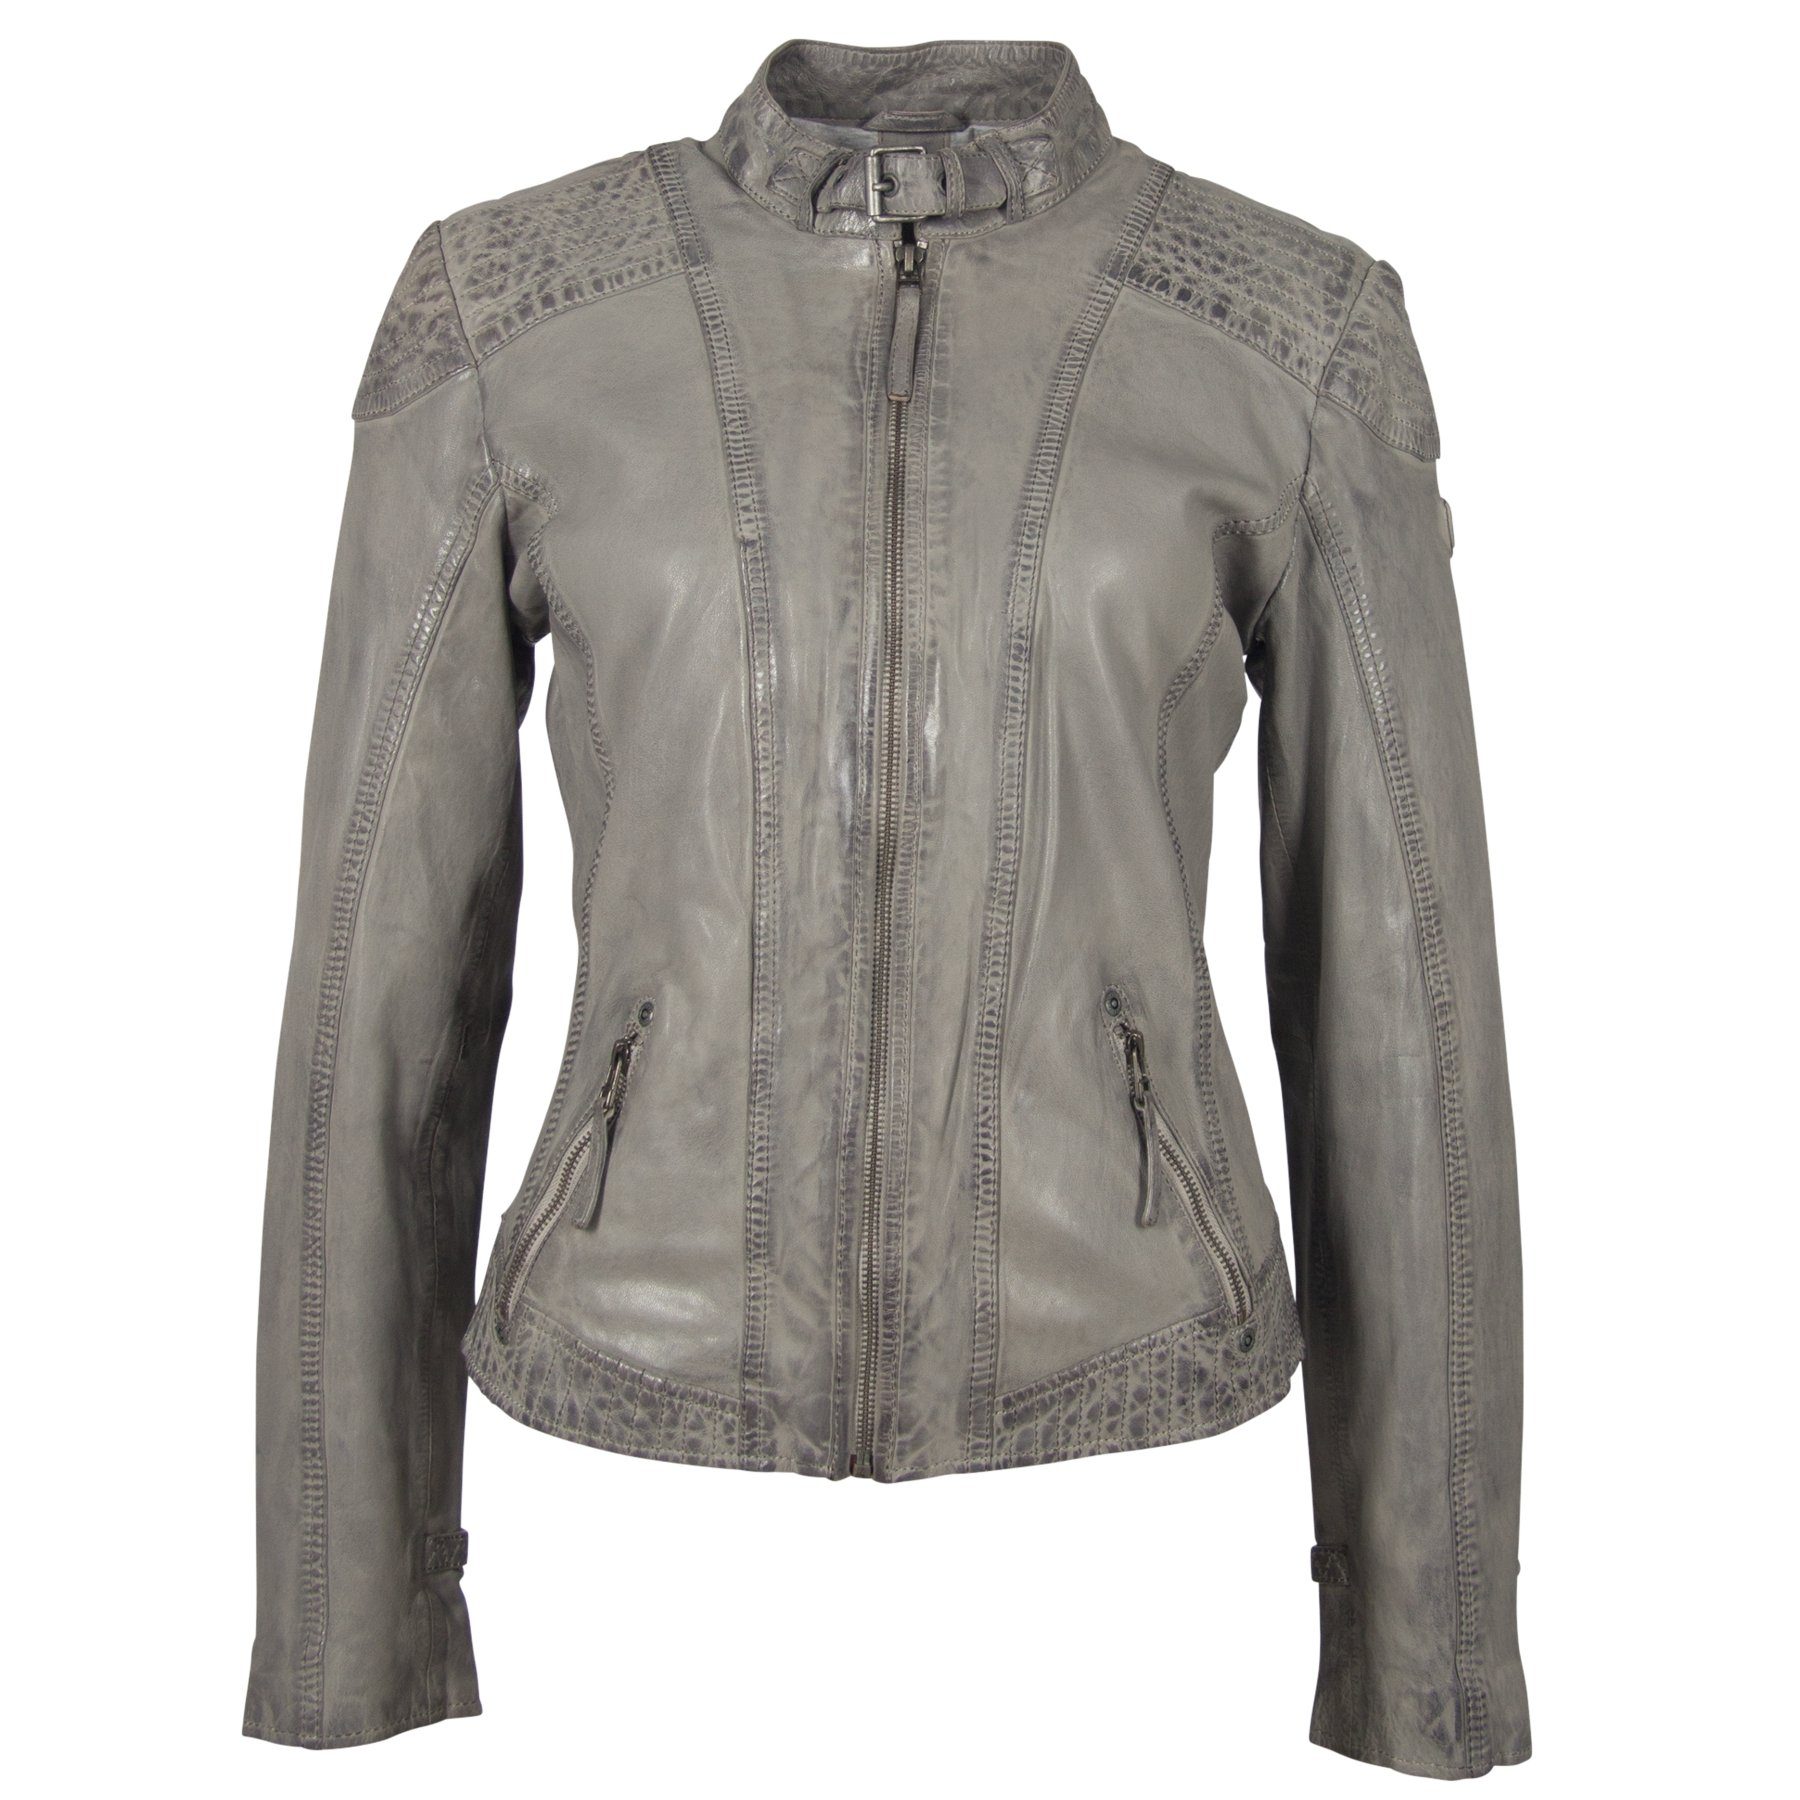 Gipsy Lederjacke »Bikerjacke Damen Lederjacke GGPacey LVTW Jacke Grau in  verschiedenen Größen« online kaufen | OTTO